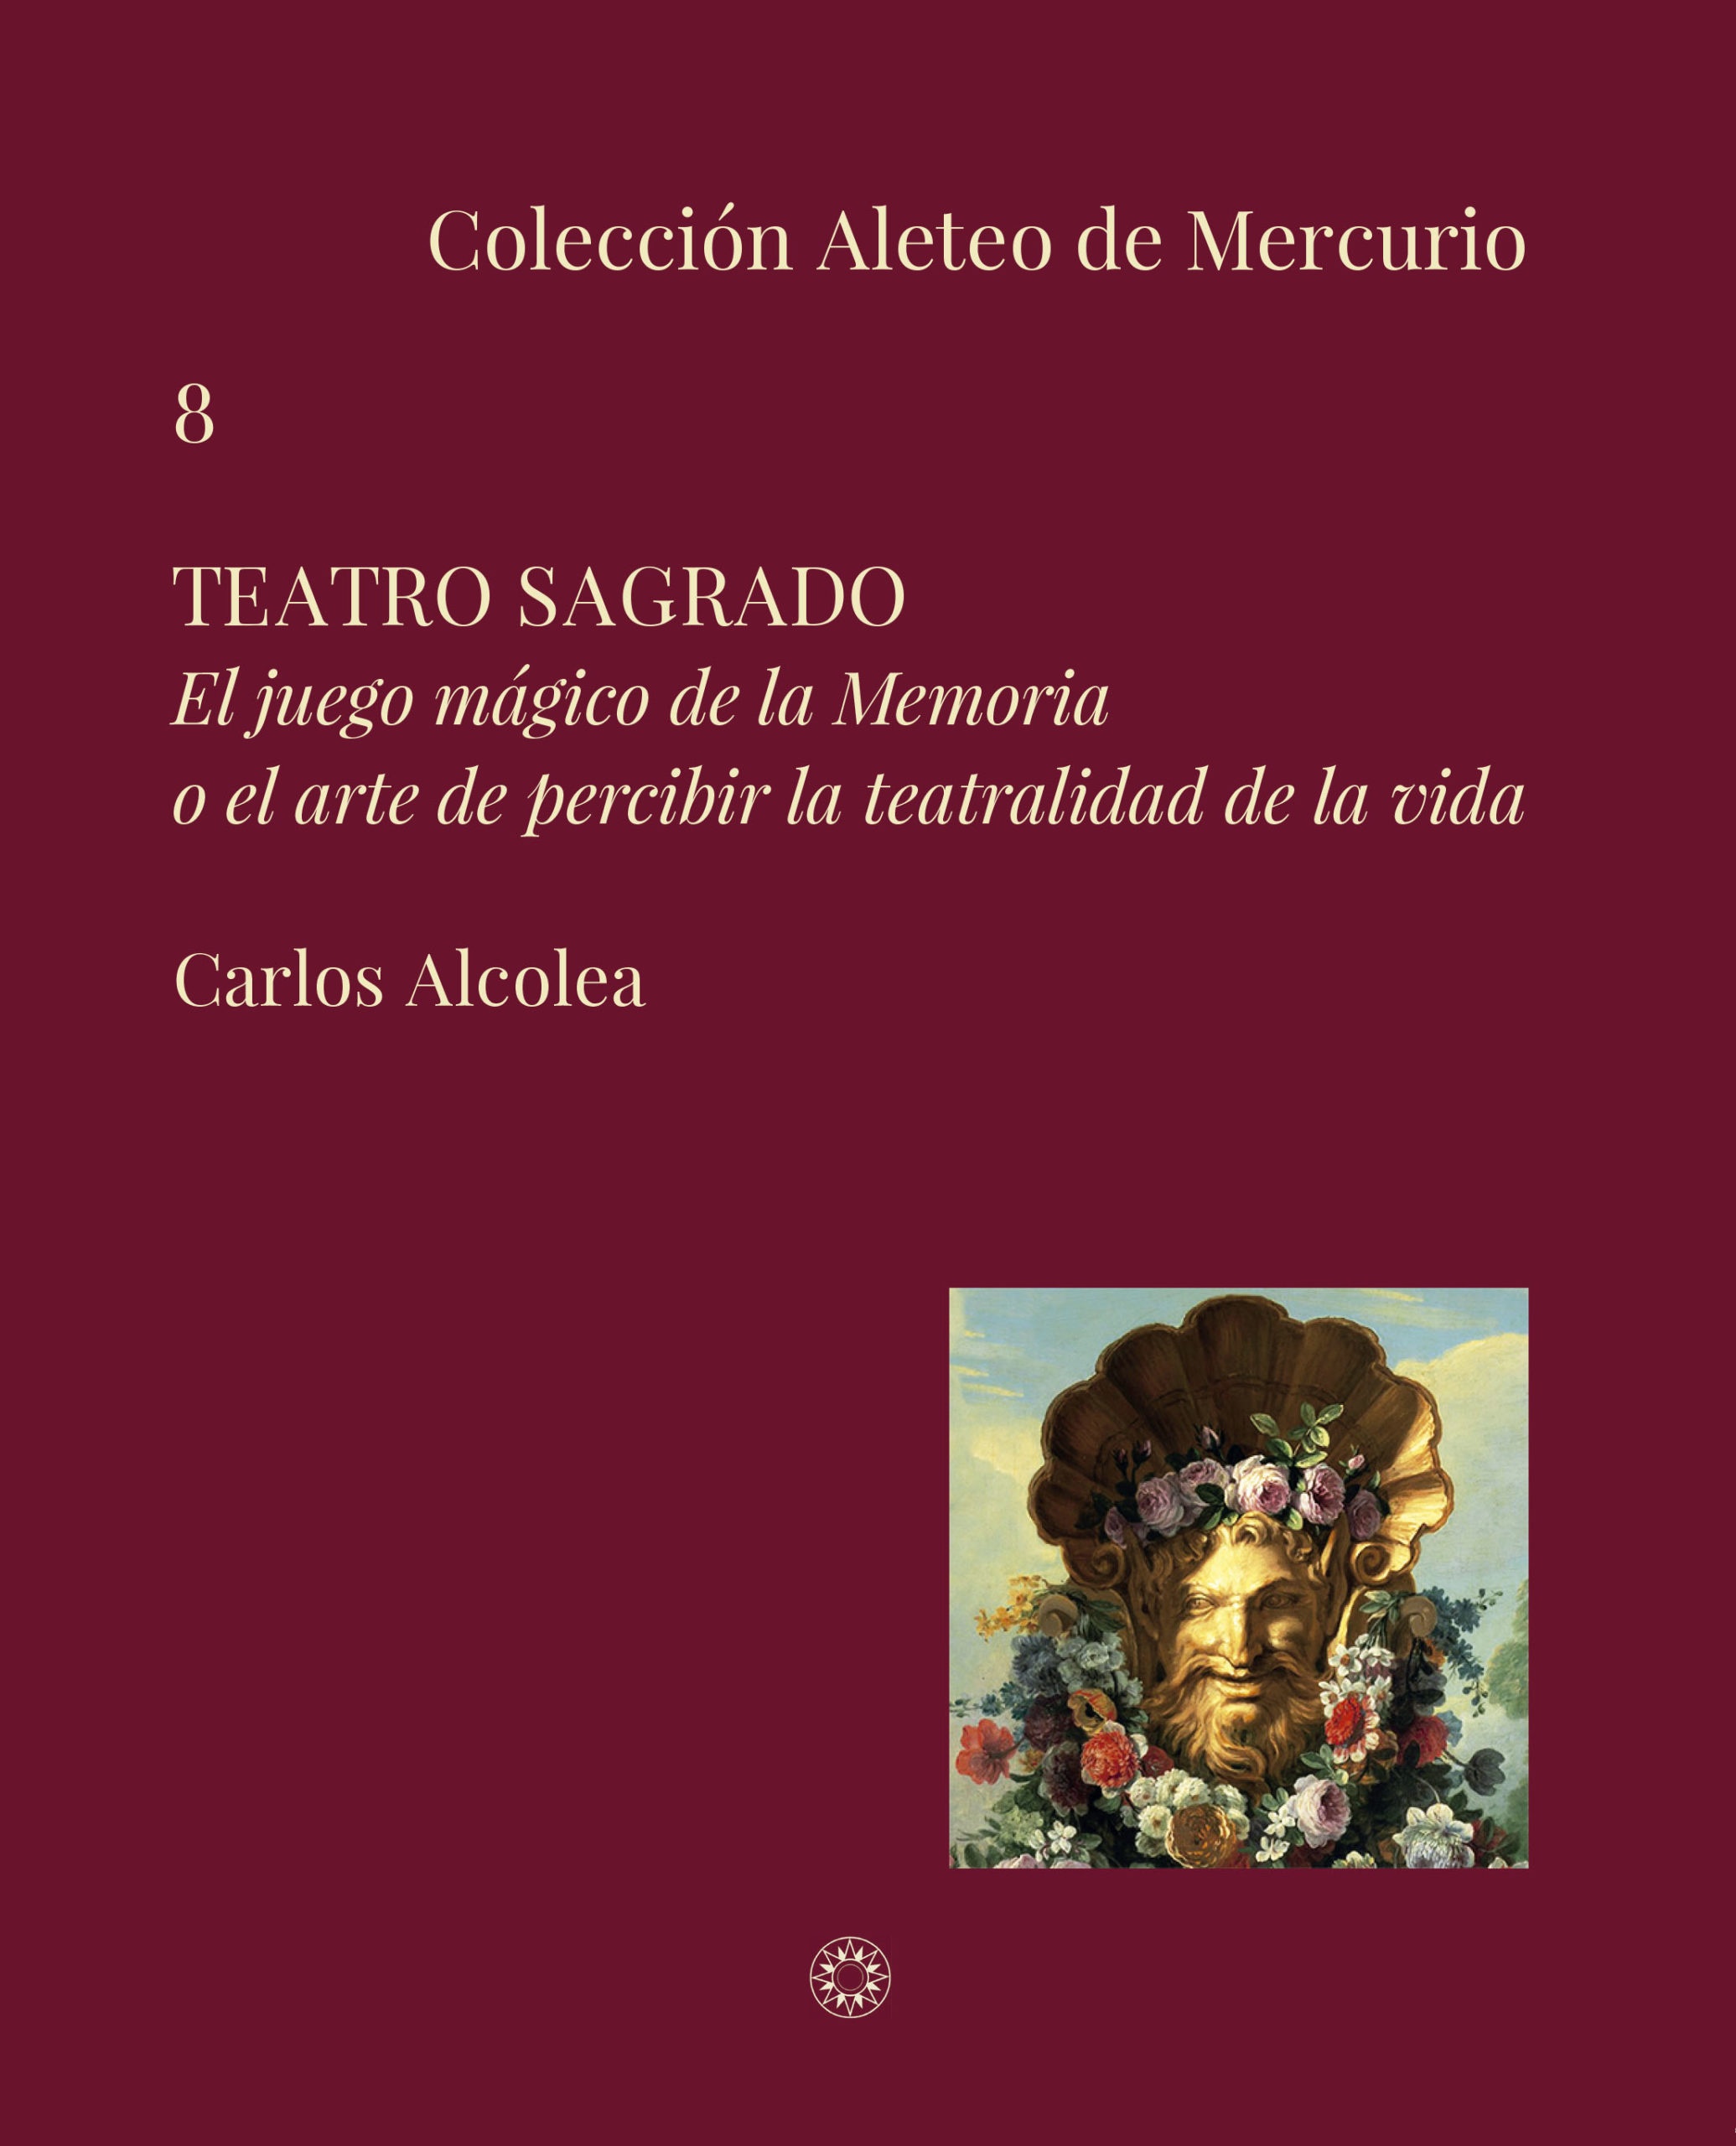 Frank G. Rubio escribe sobre Teatro Sagrado, de Carlos Alcolea, para Ángulo muerto